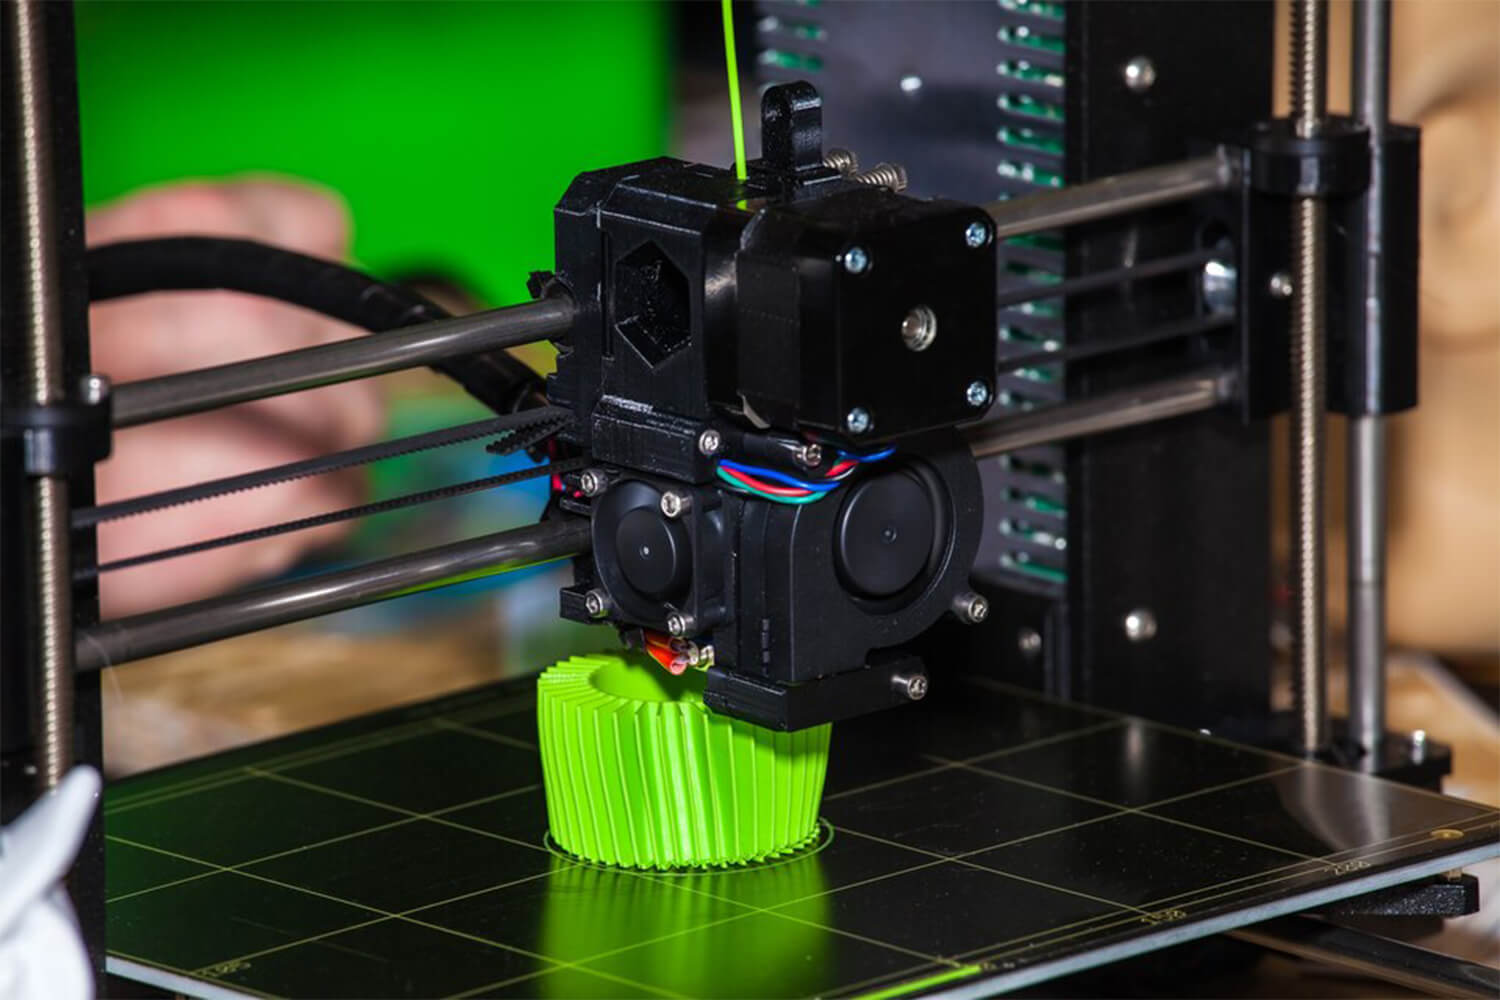 Printer 3D Sedang Mencetak Objek Tiga Dimensi Dalam Model Bisnis Digital Printing.